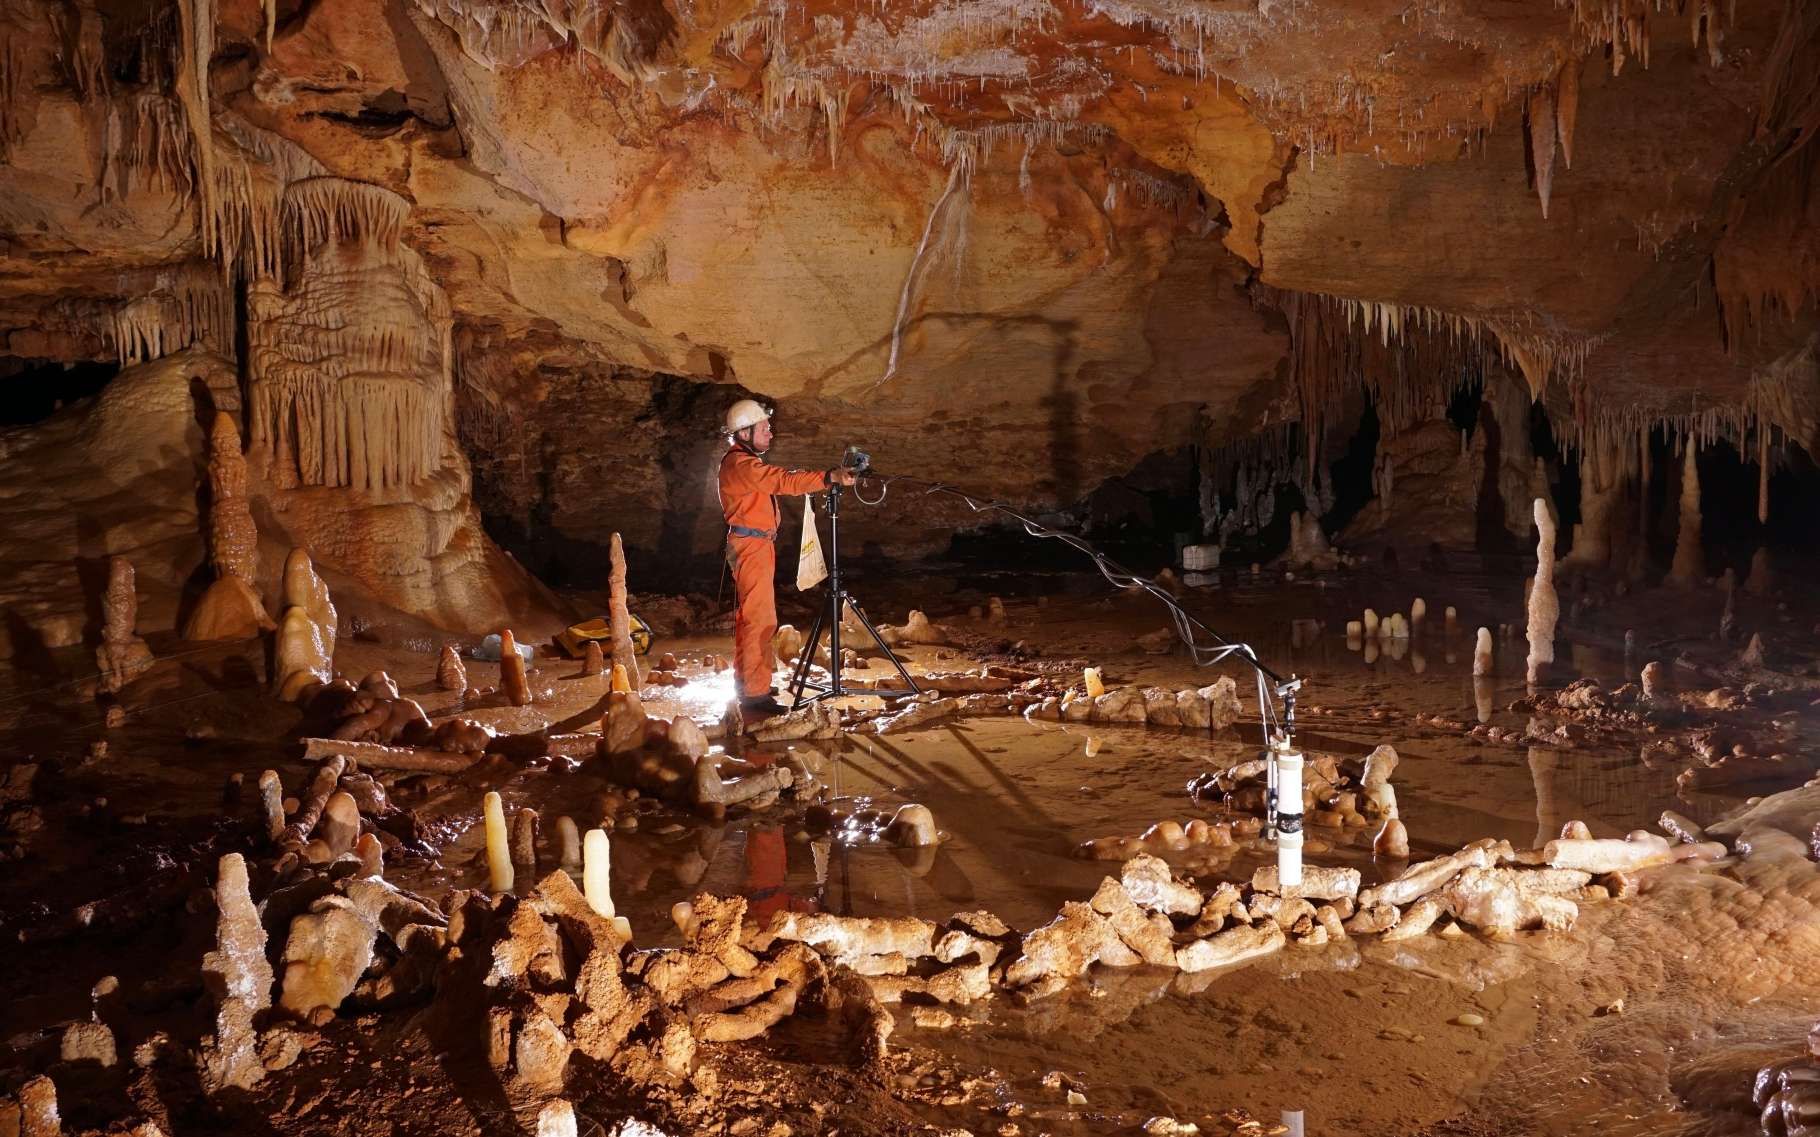 Dans la grotte de Bruniquel (Tarn-et-Garonne), un chercheur réalise des mesures magnétiques. Elles permettent de repérer des traces de calcite brûlée par des flammes. Un jour, des Hommes ont installé là un éclairage imposant et se sont donné beaucoup de mal pour assembler des morceaux de stalagmites en alignements réguliers. Ils étaient des Néandertaliens et ces spéléologues ont précédé de 140.000 ans dans le monde souterrain les Homo sapiens ayant peint les fresques de la grotte Chauvet. © Étienne Fabre, SSAC